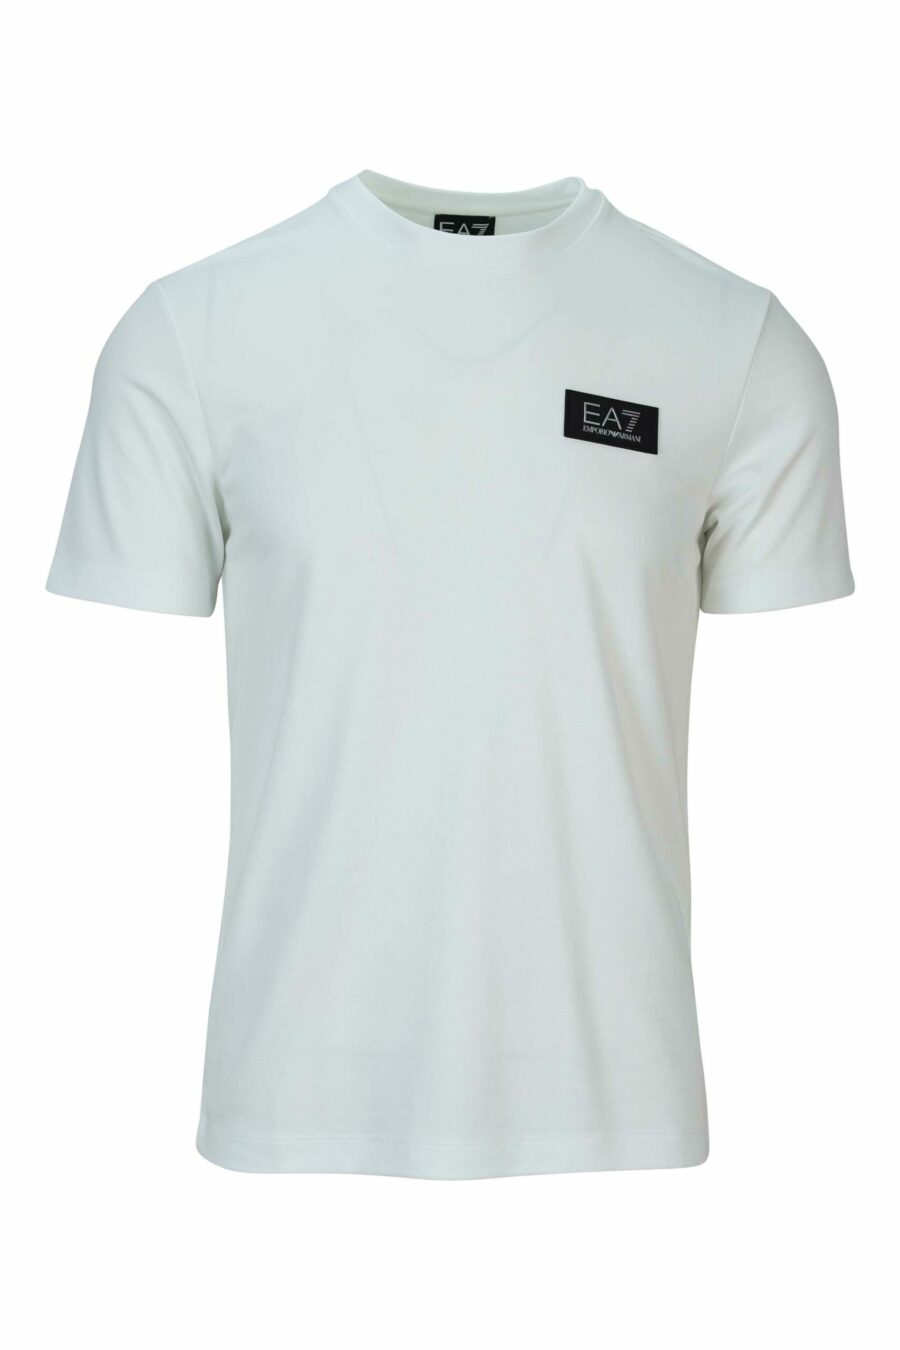 T-shirt branca de tamanho grande com o mini-logotipo "lux identity" branco sobre placa preta - 8058947508495